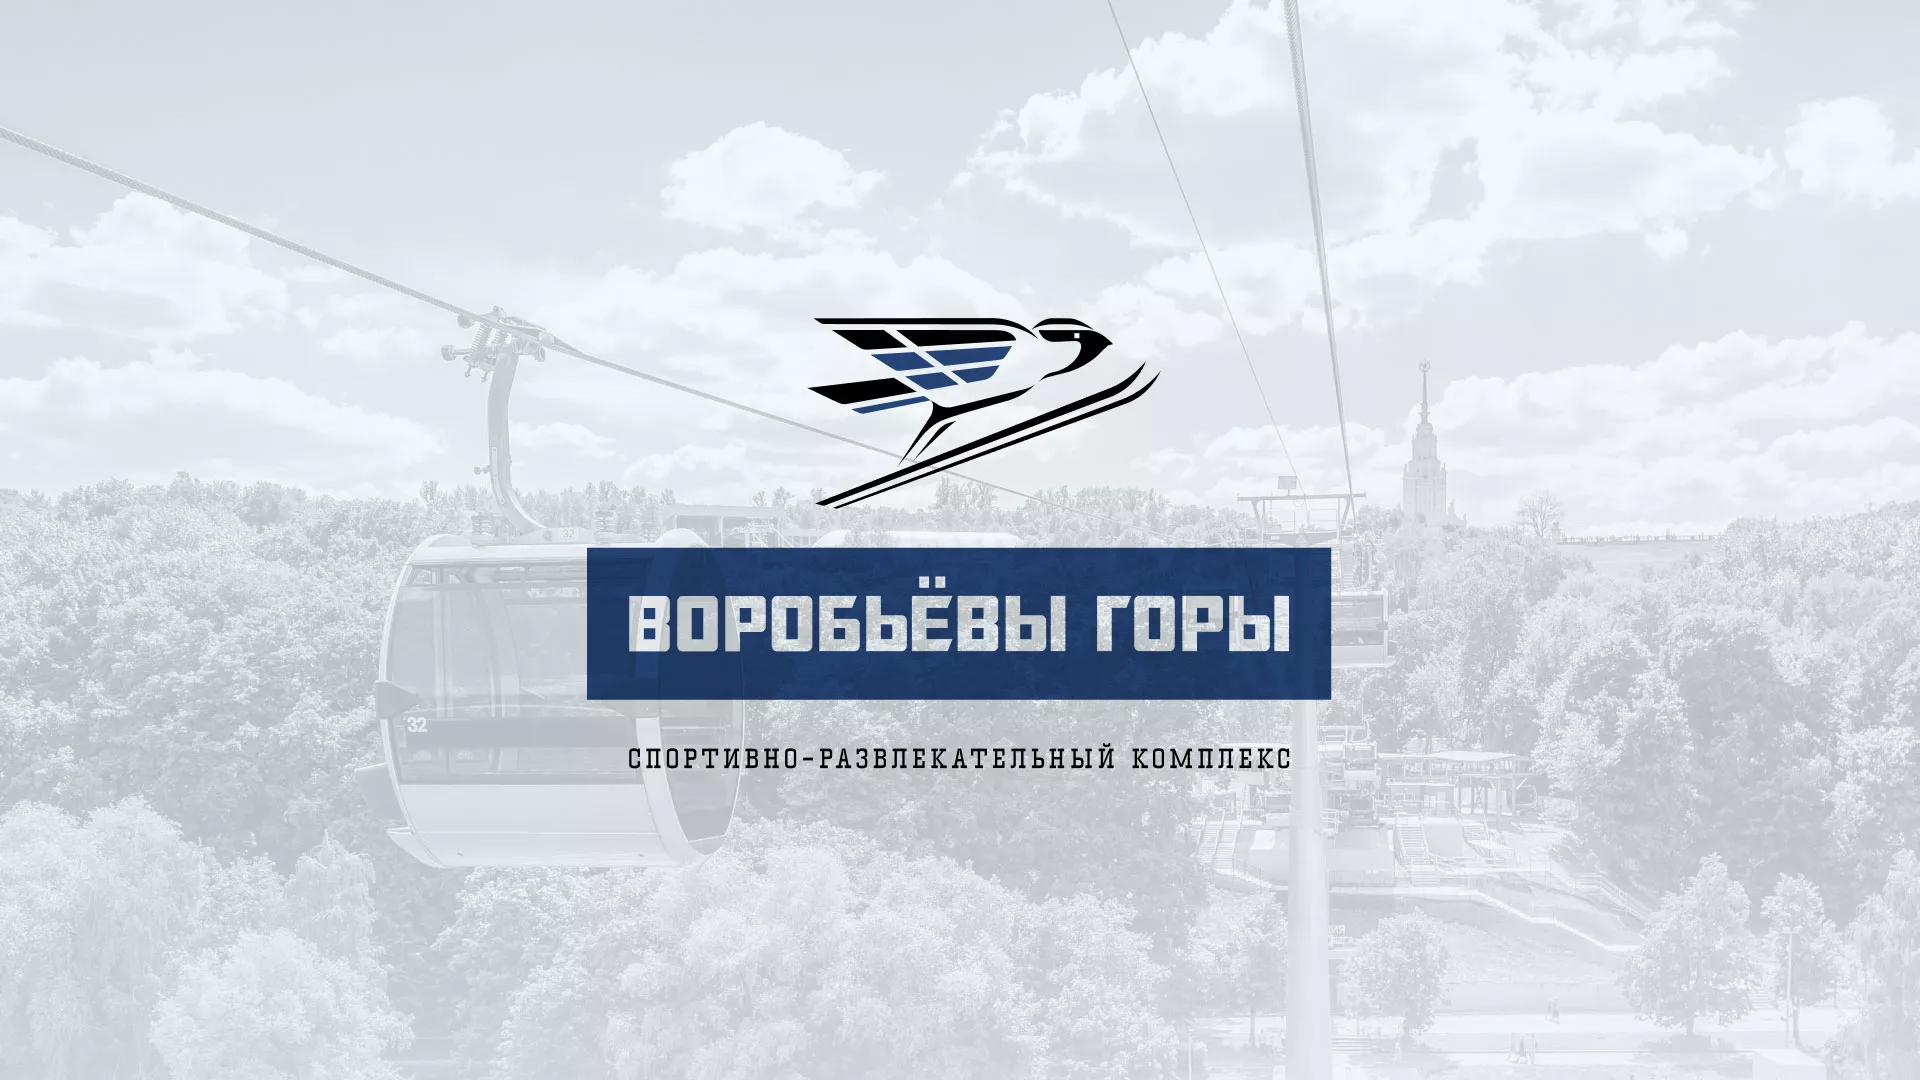 Разработка сайта в Киреевске для спортивно-развлекательного комплекса «Воробьёвы горы»